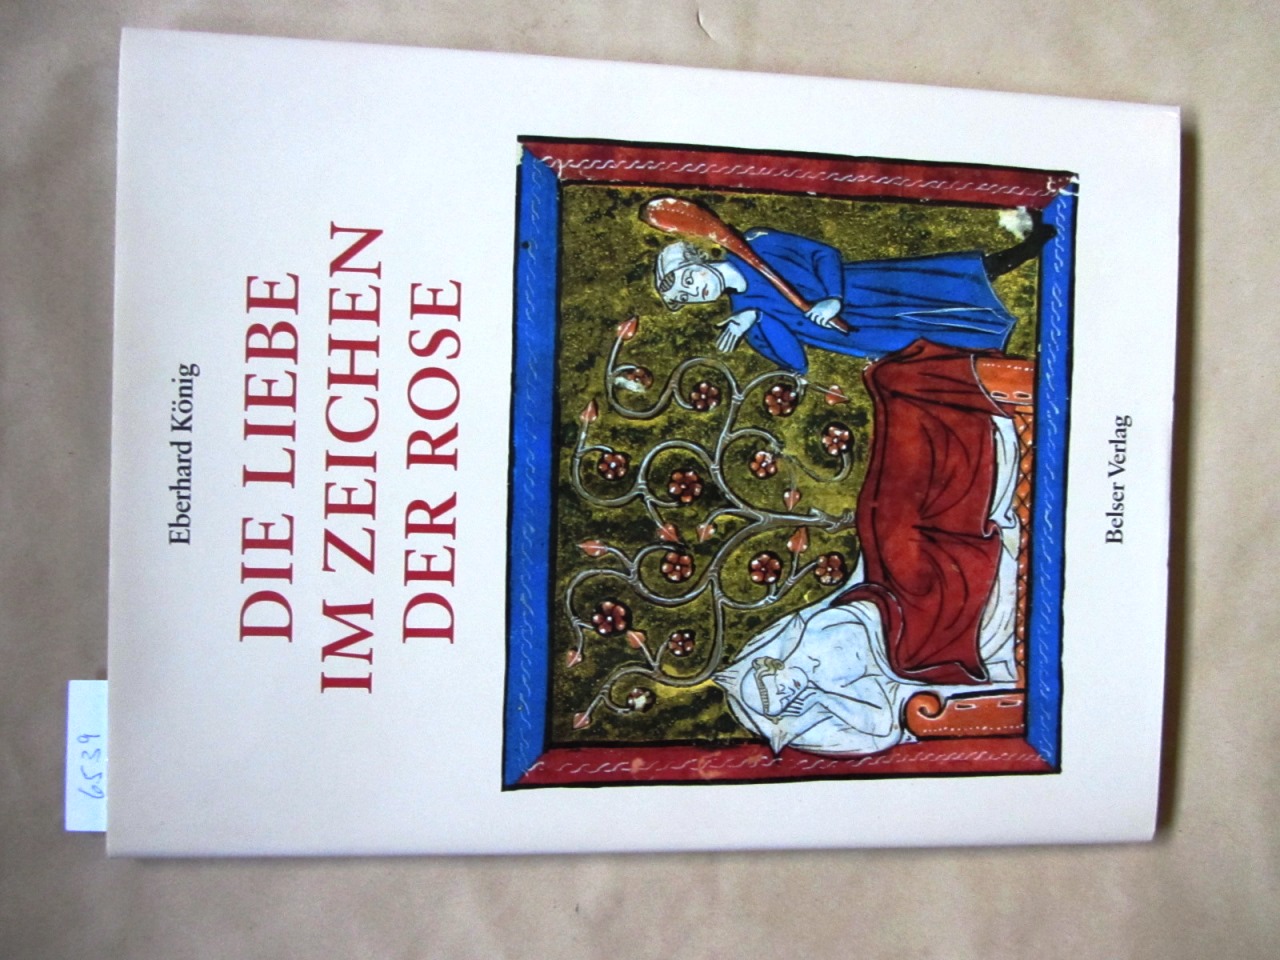 König, Eberhard:  Die Liebe im Zeichen der Rose. Die Handschriften des Rosenromans in der Vatikanischen Bibliothek. ("Belser Bildgeschichte des Mittelalters") 